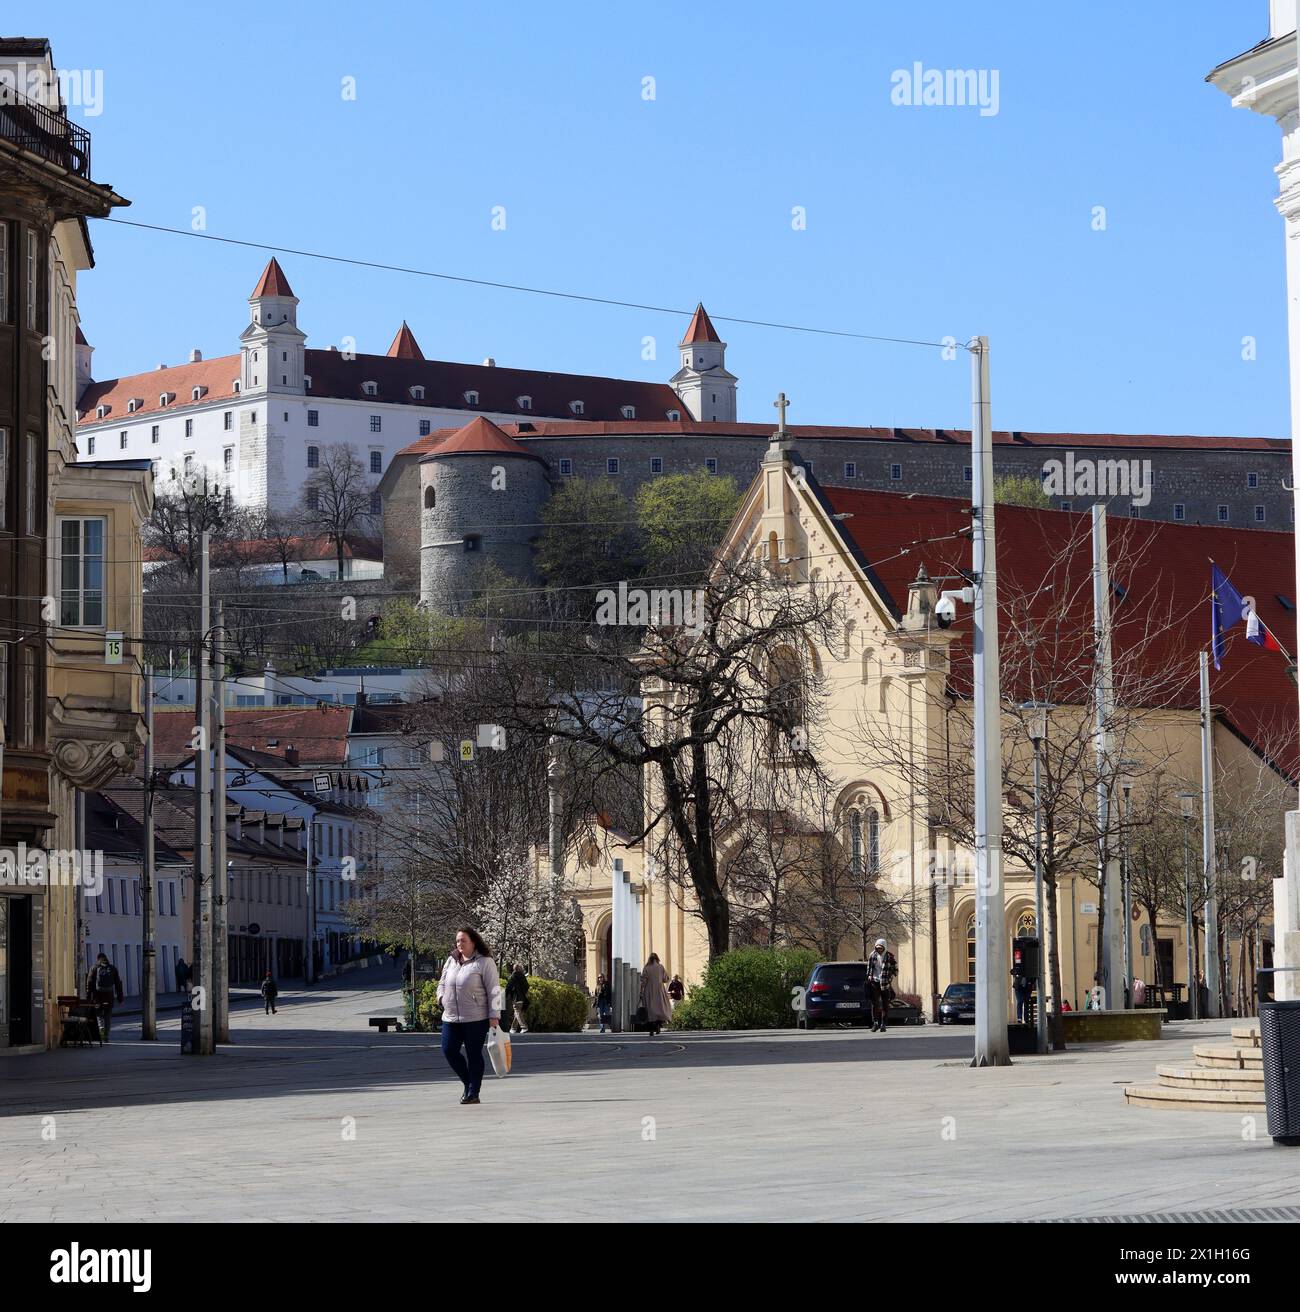 Vieille ville de Bratislava, Slovaquie le jour ensoleillé du printemps. Beaux bâtiments, arbres en fleurs, vue sur la rue. Architecture de l'Europe centrale. Banque D'Images